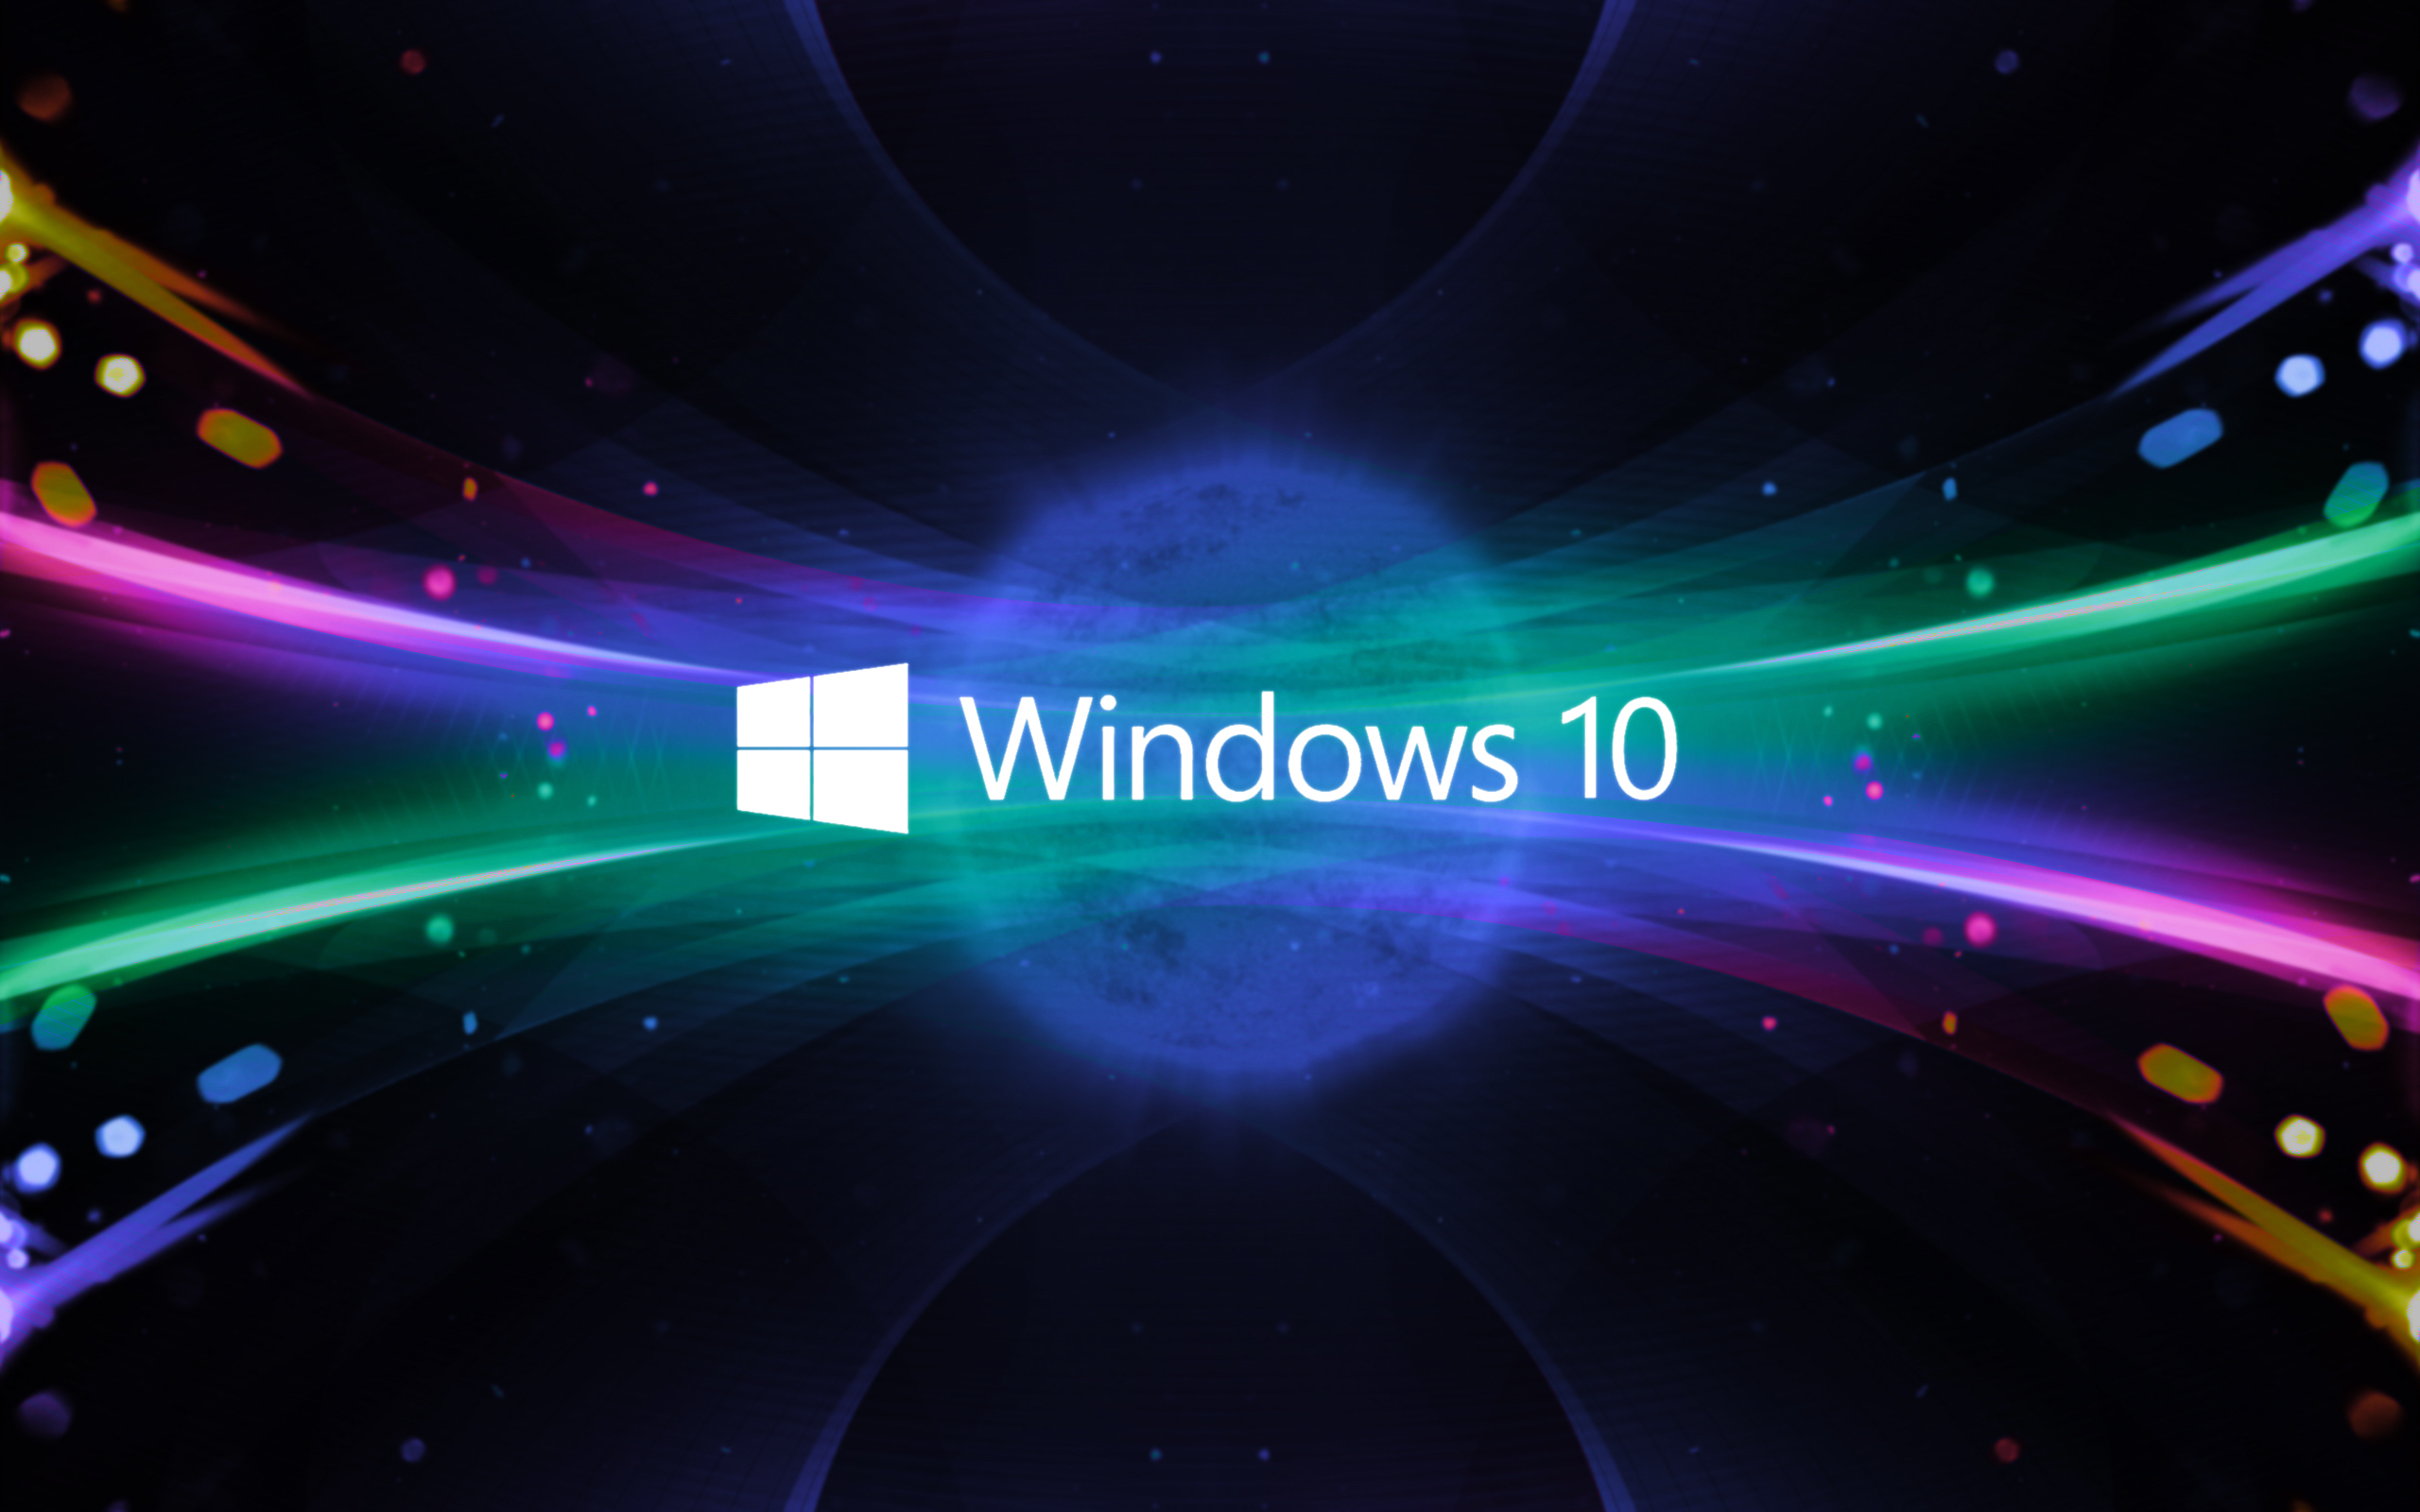 Không muốn nâng cấp lên Windows 10? Đừng lo, bạn vẫn có thể tận hưởng trọn vẹn những tính năng độc đáo của Windows 7 nhưng với hình nền độc đáo và hoàn toàn miễn phí. Hãy kiểm tra xem đó là gì và không bỏ lỡ bất kì thứ gì.